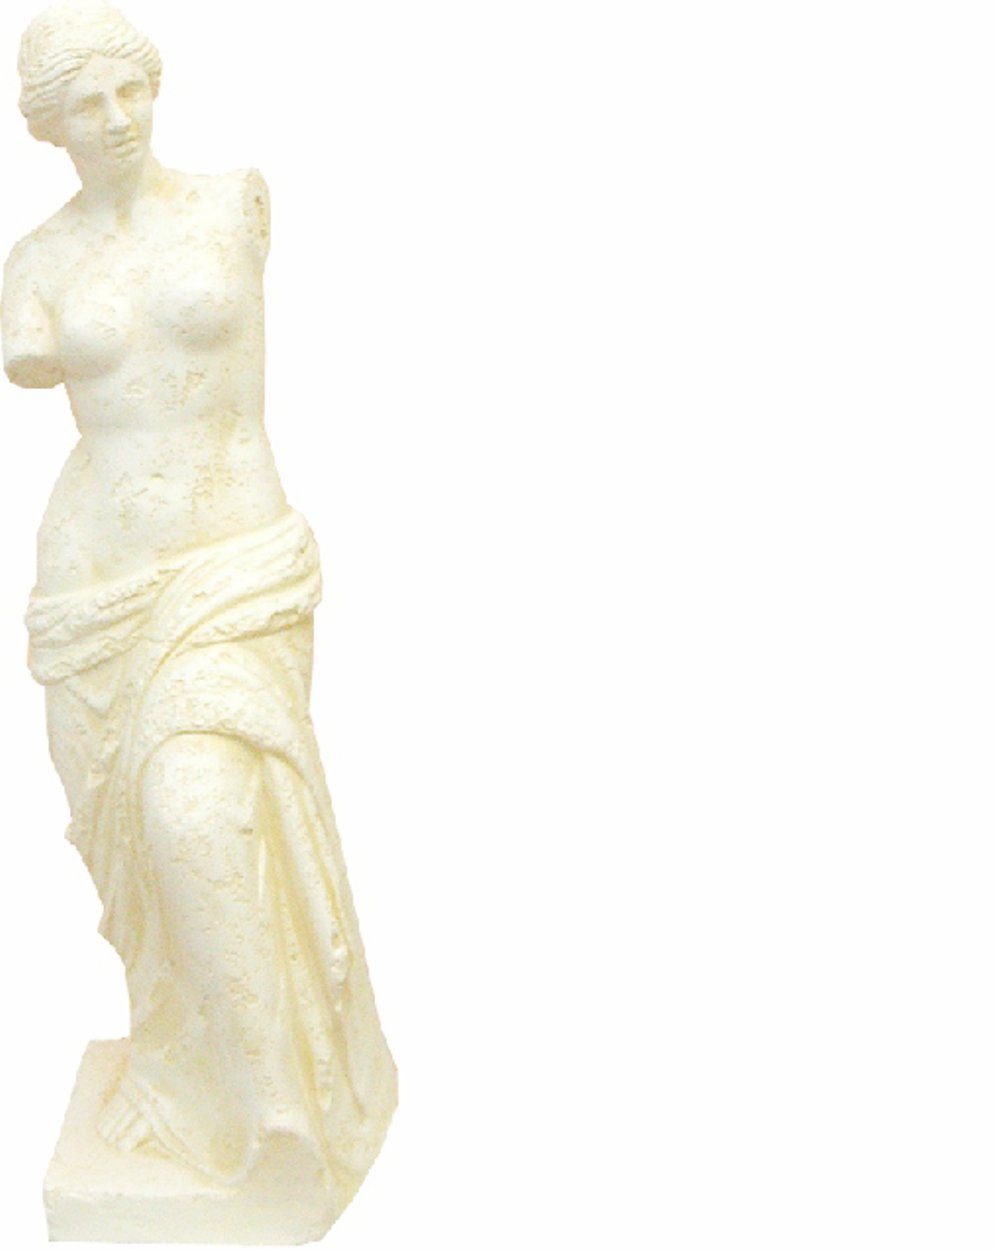 Griechische Antik Stil Skulptur Design Dekoration 0330 Skulptur Figur JVmoebel Figuren